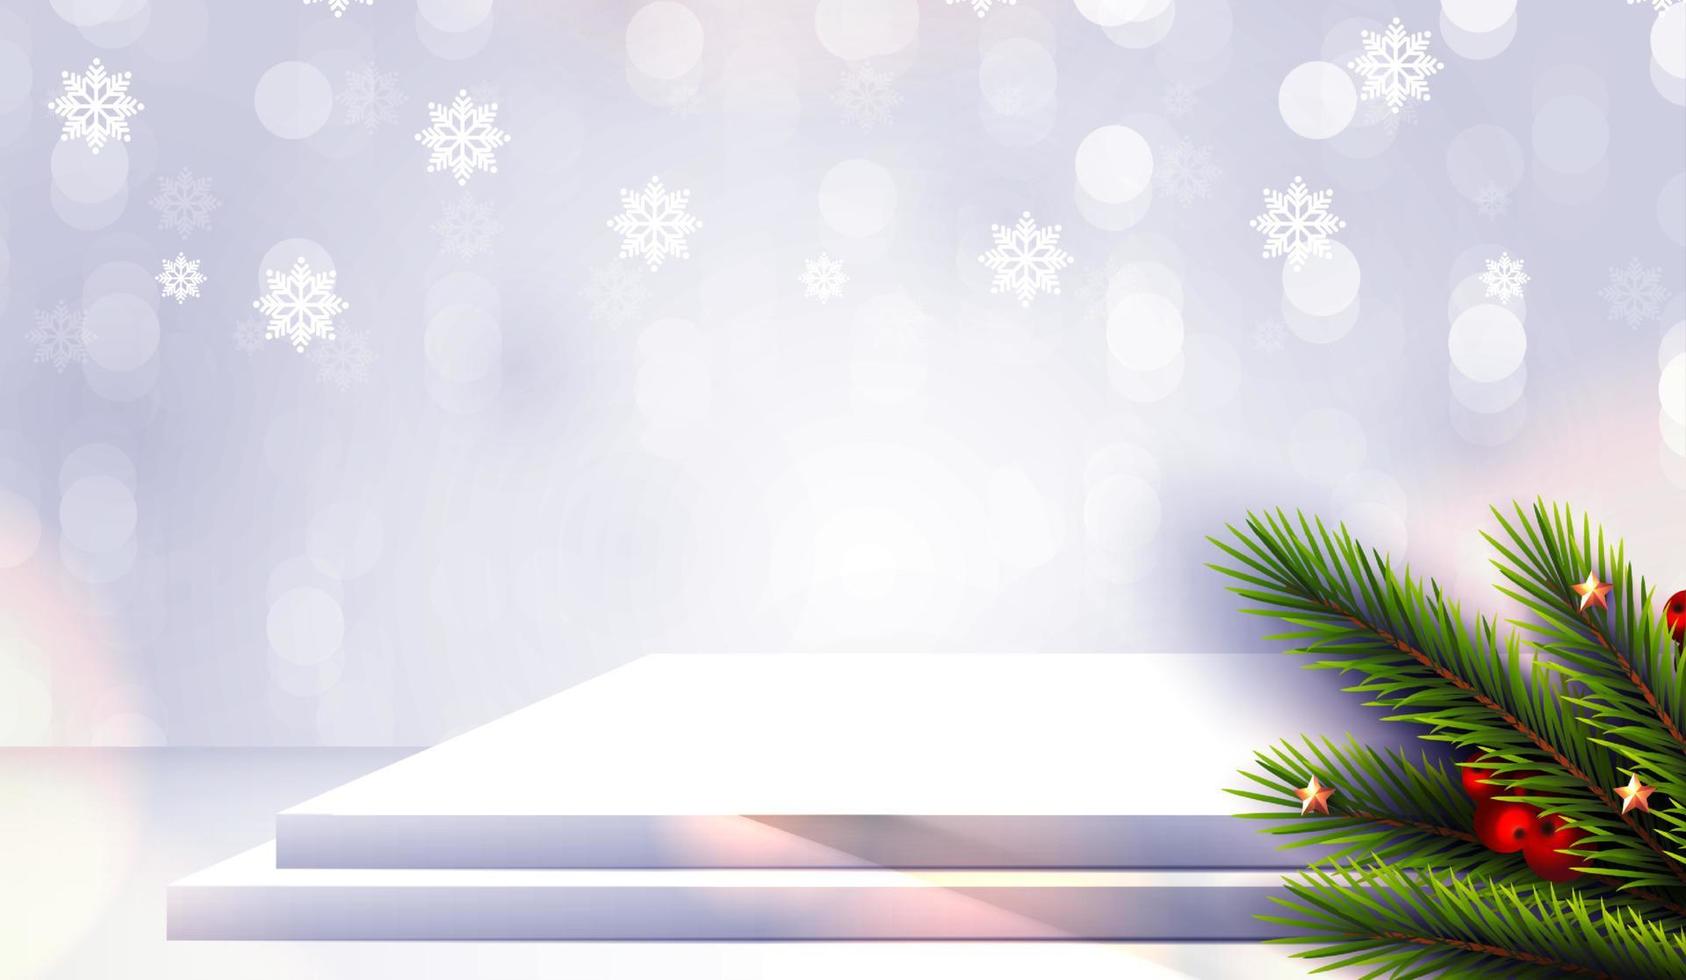 joyeux noël est la forme du podium géométrique pour l'affichage des produits cosmétiques. piédestal ou plate-forme de scène. fond rouge de Noël d'hiver avec arbre de Noël pour le produit de promotion. conception de vecteur